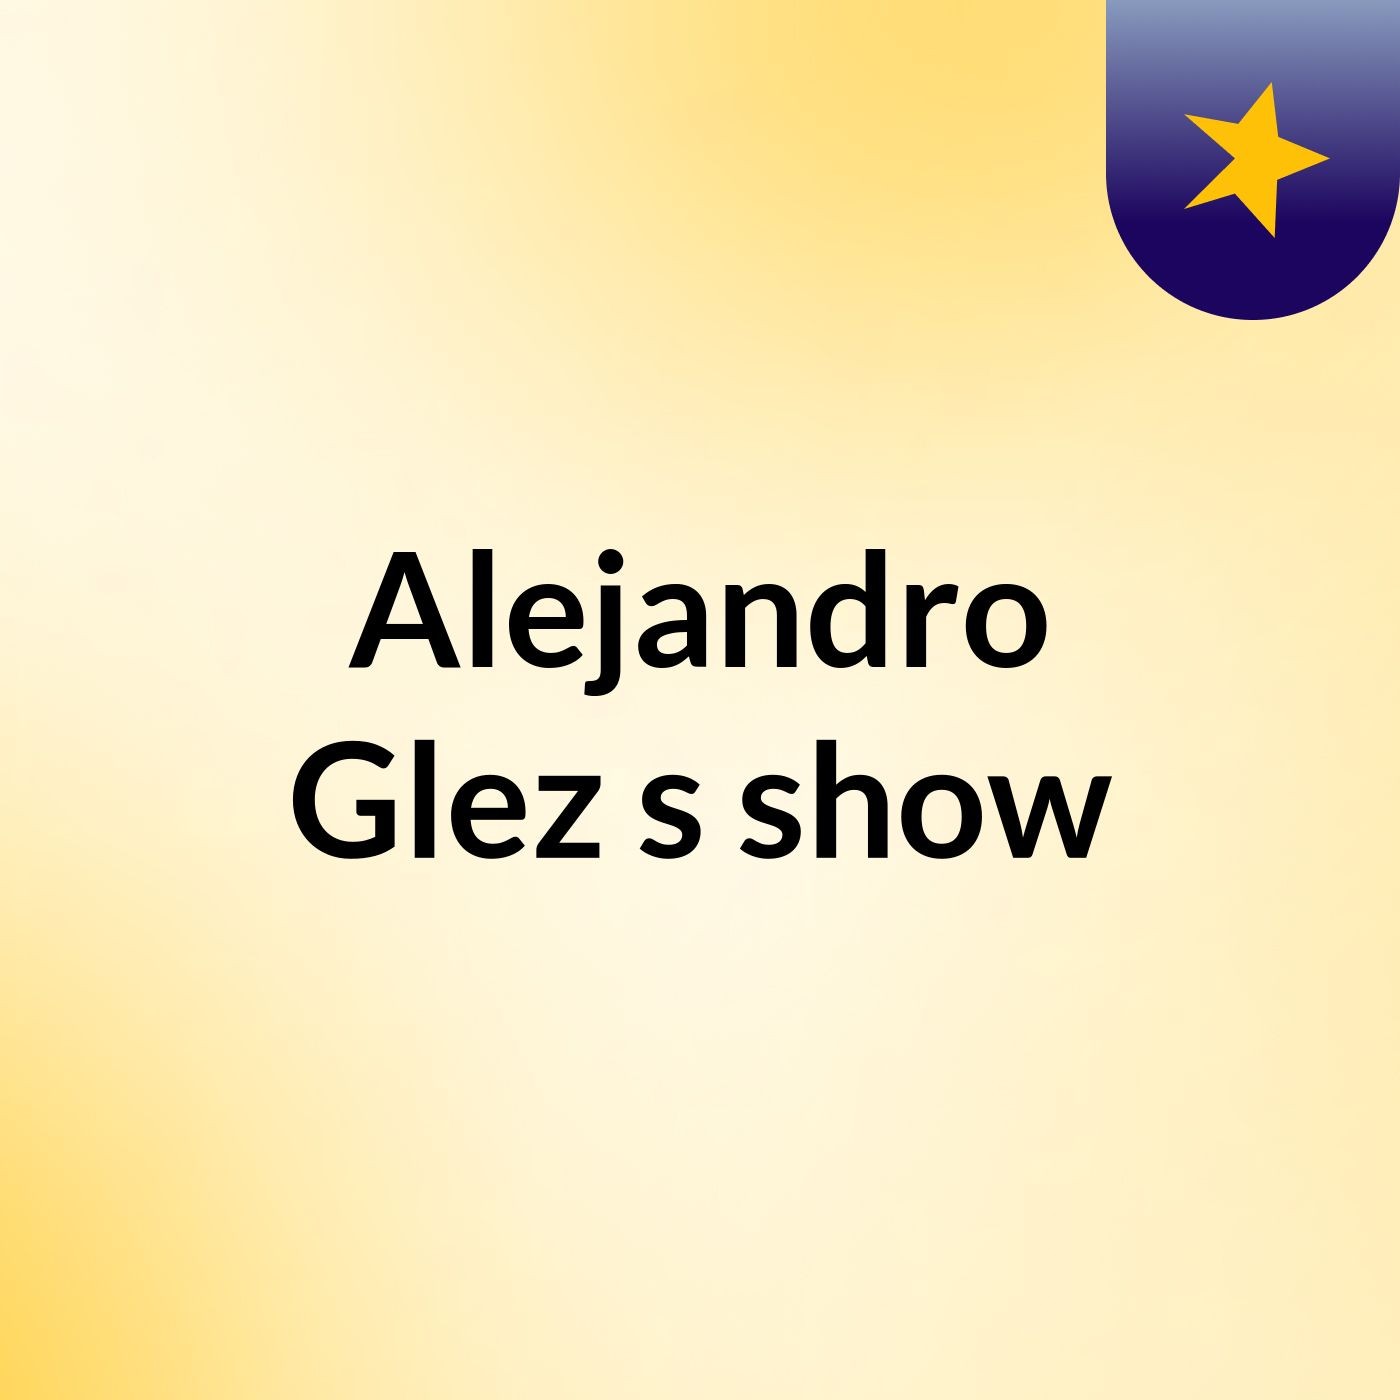 Alejandro Glez's show